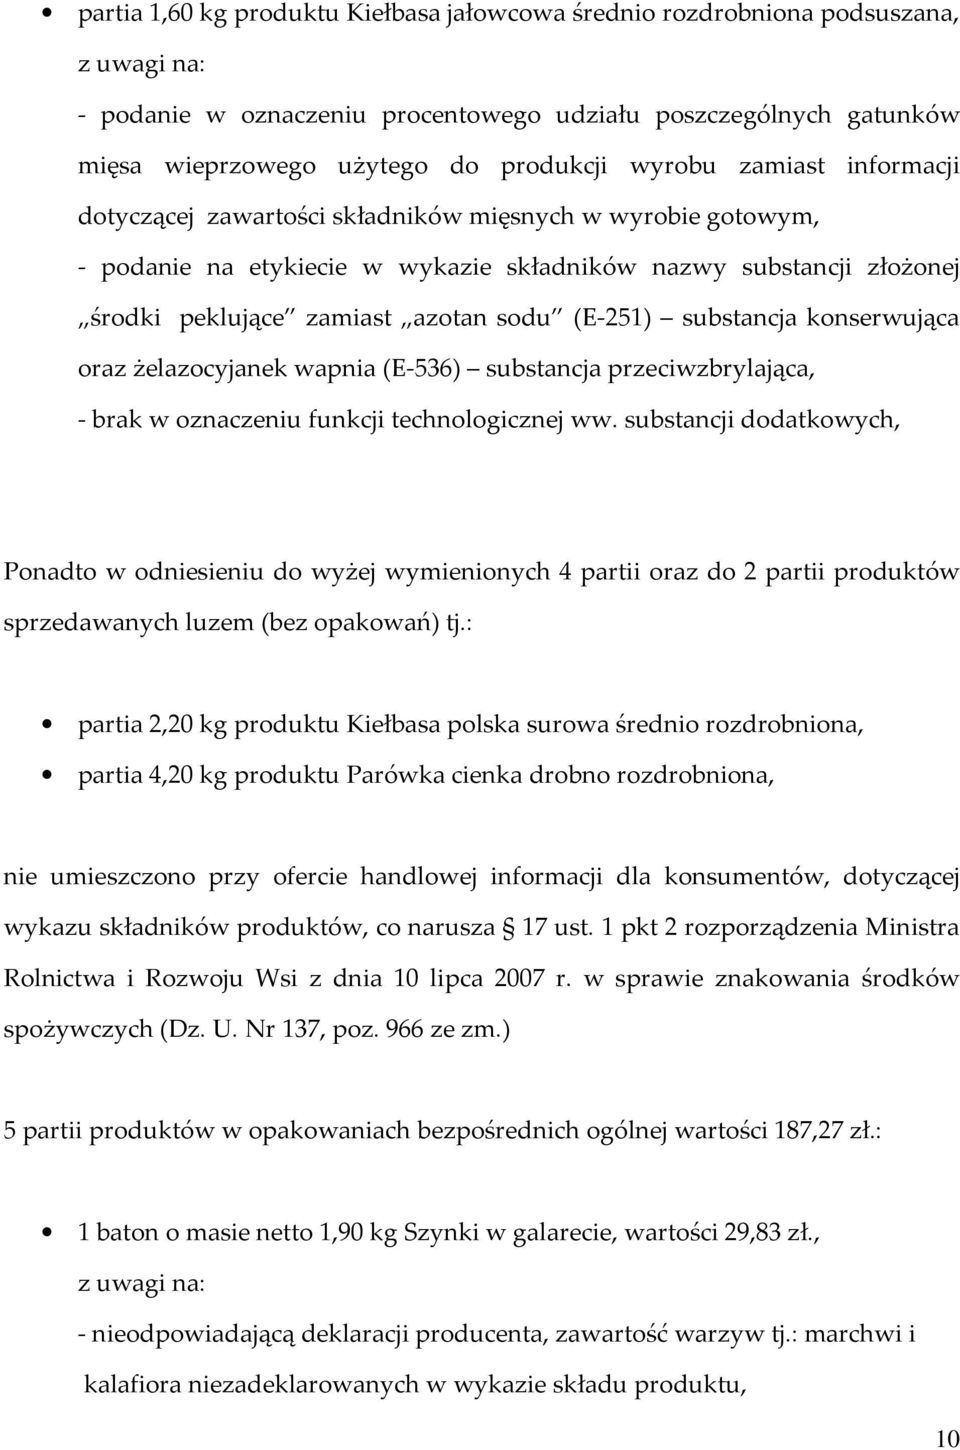 : partia 2,20 kg produktu Kiełbasa polska surowa średnio rozdrobniona, partia 4,20 kg produktu Parówka cienka drobno rozdrobniona, nie umieszczono przy ofercie handlowej informacji dla konsumentów,